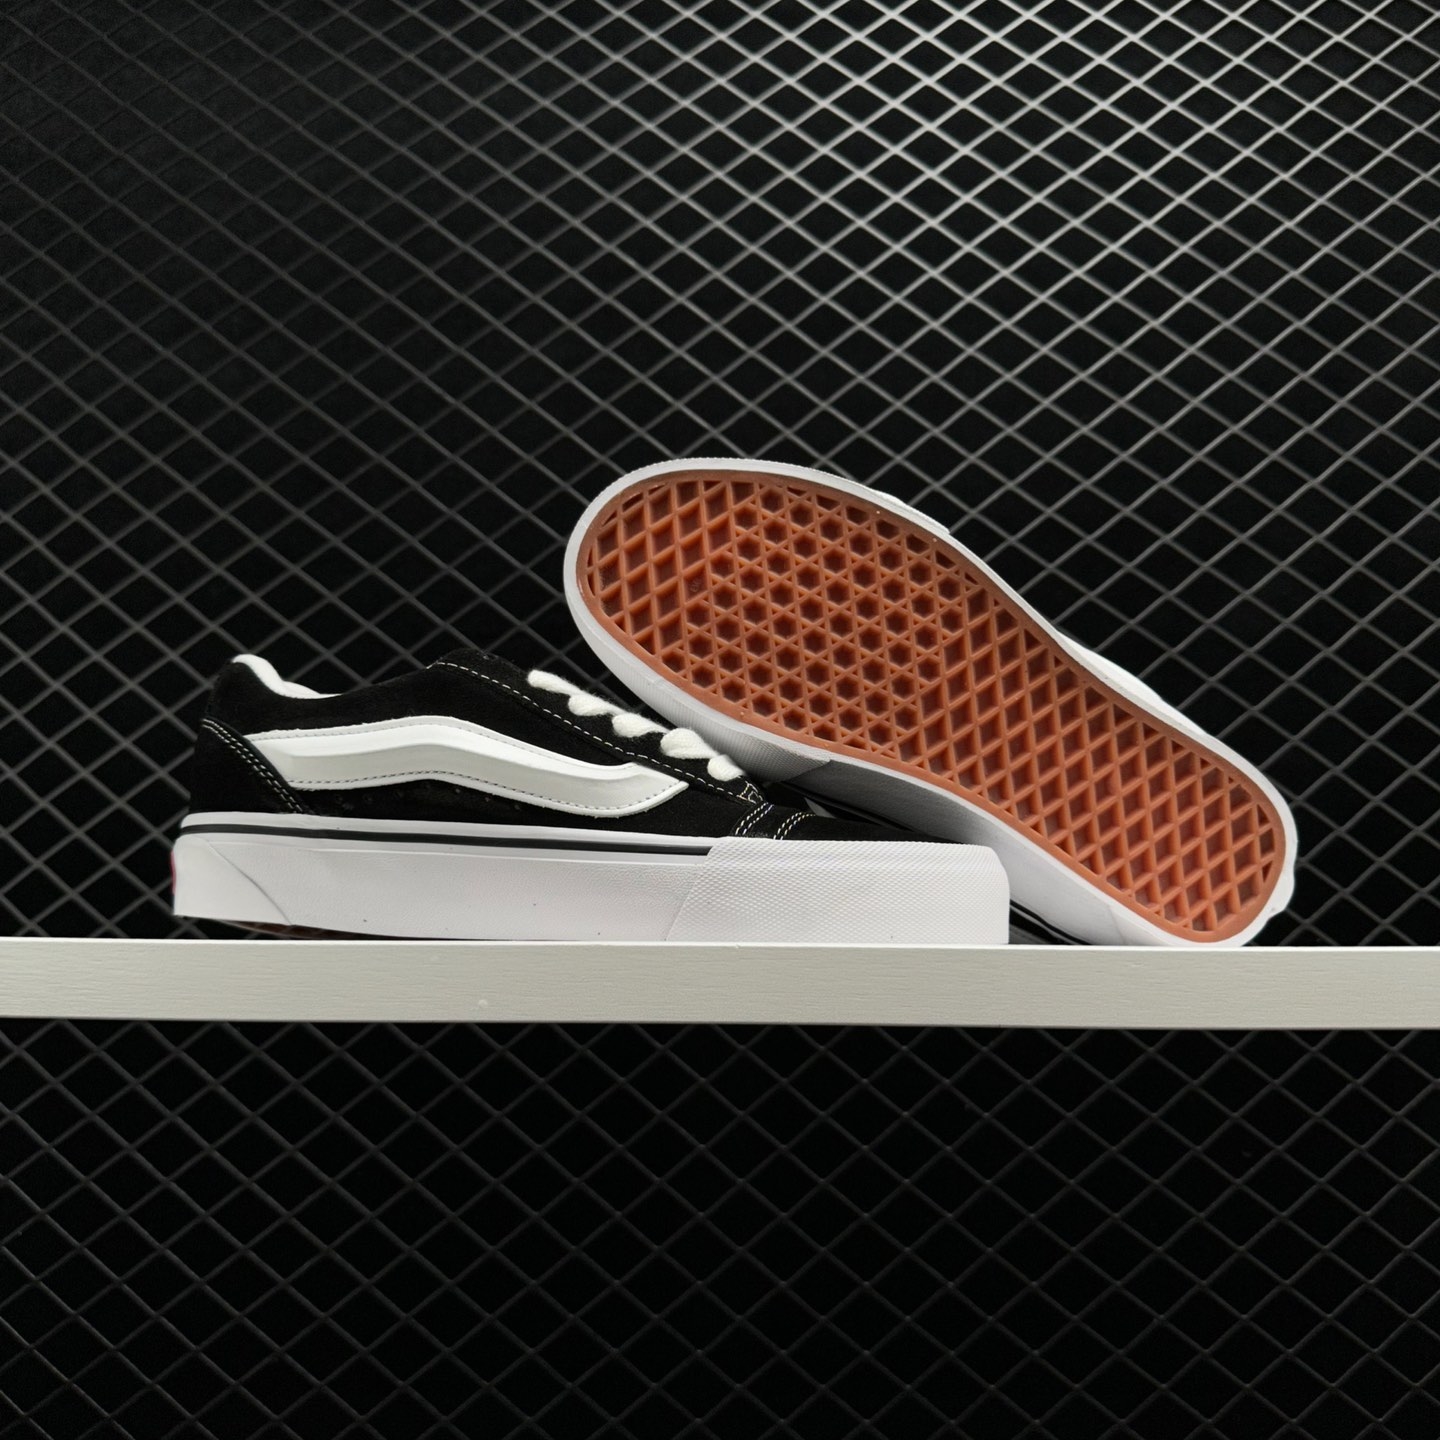 Vans Knu Skool Black White VN0009QC6BT | Classic Style, Versatile Sneakers